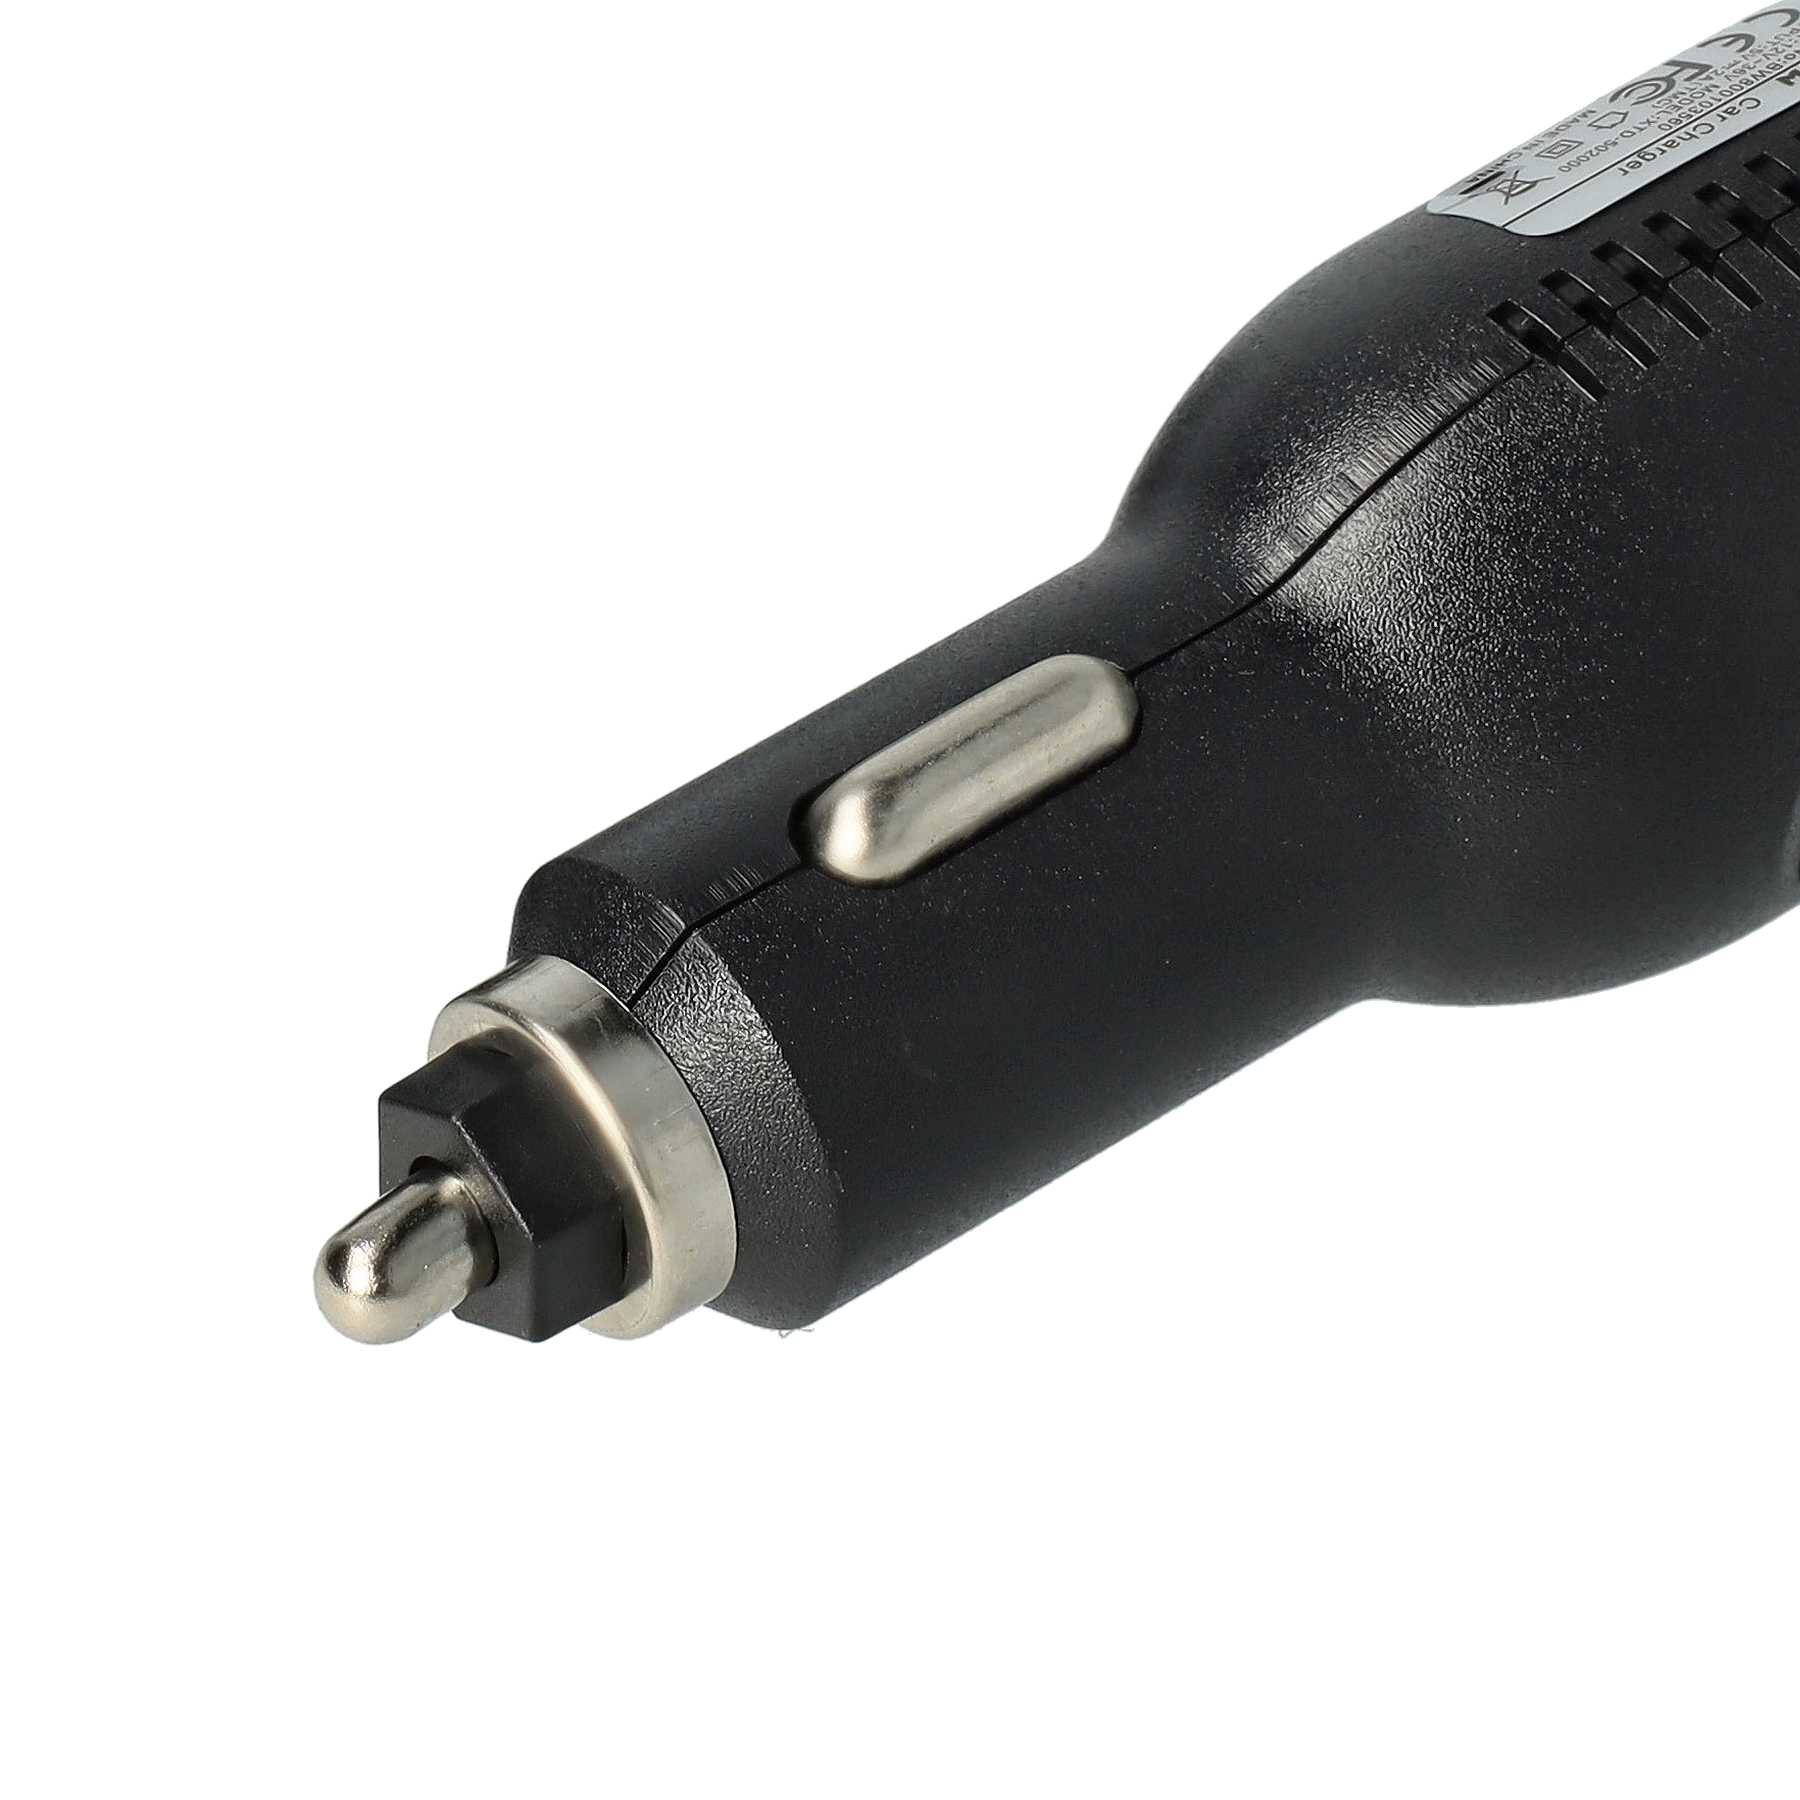 Ładowarka samochodowa Mini USB do urządzeń np. nawigacji GPS - 2,0 A + zintegrowana antena TMC